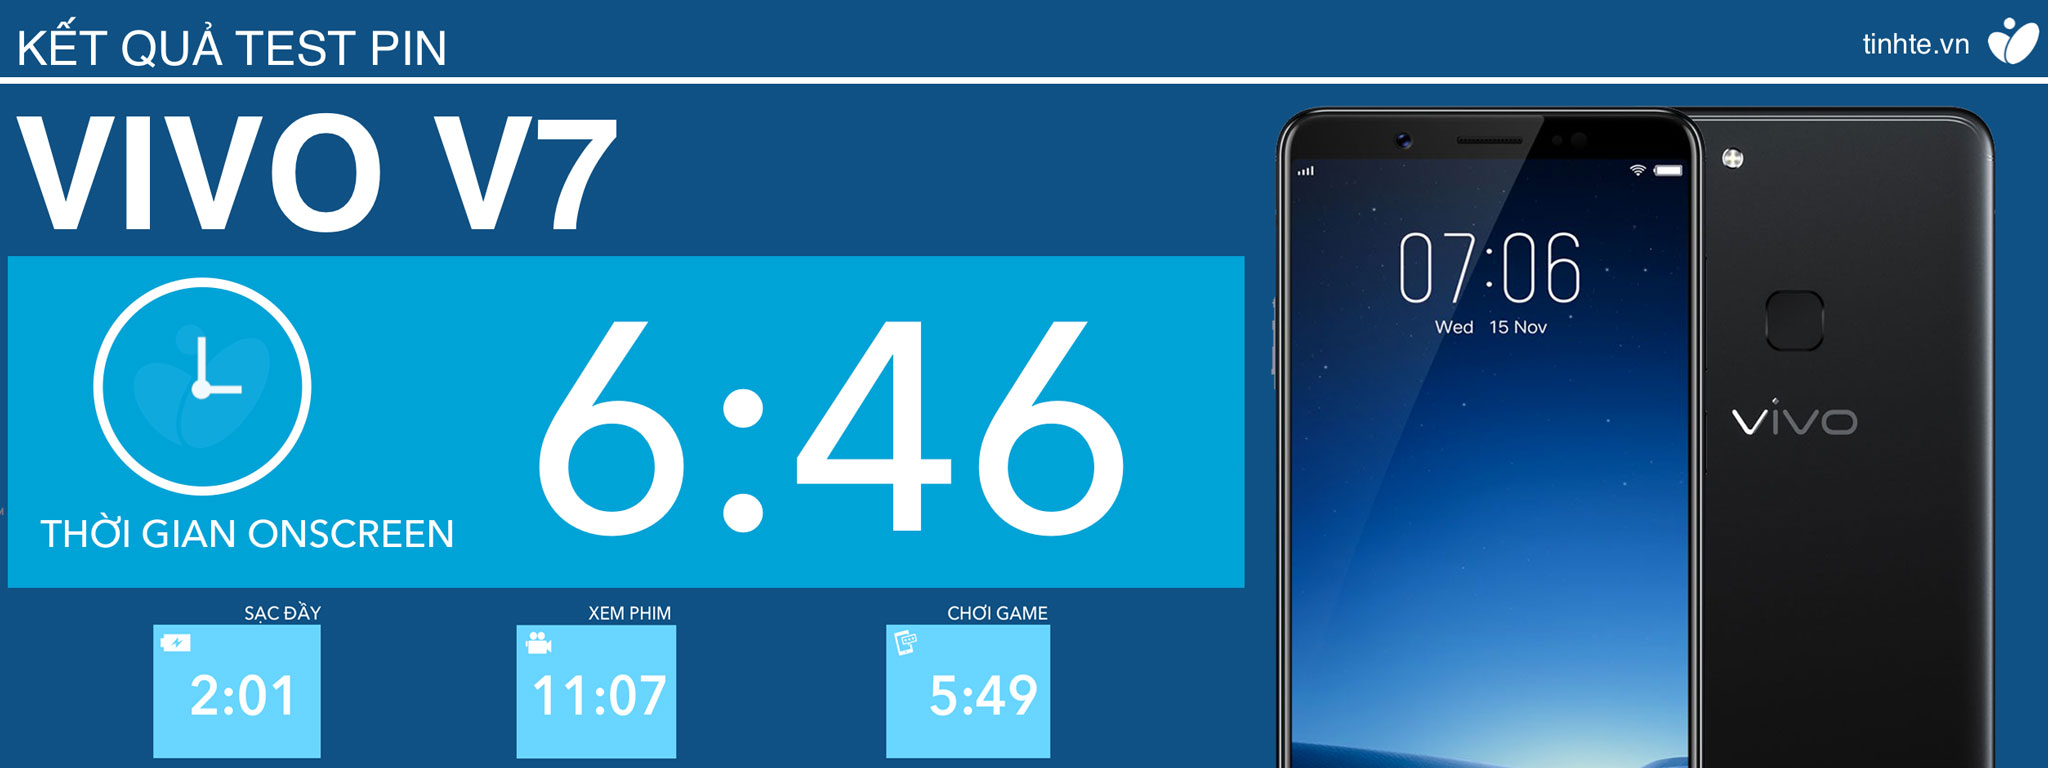 Pin Vivo V7 có thể on screen liên tục hơn 6 tiếng rưỡi với các tác vụ thực hiện hỗn hợp [HOT]